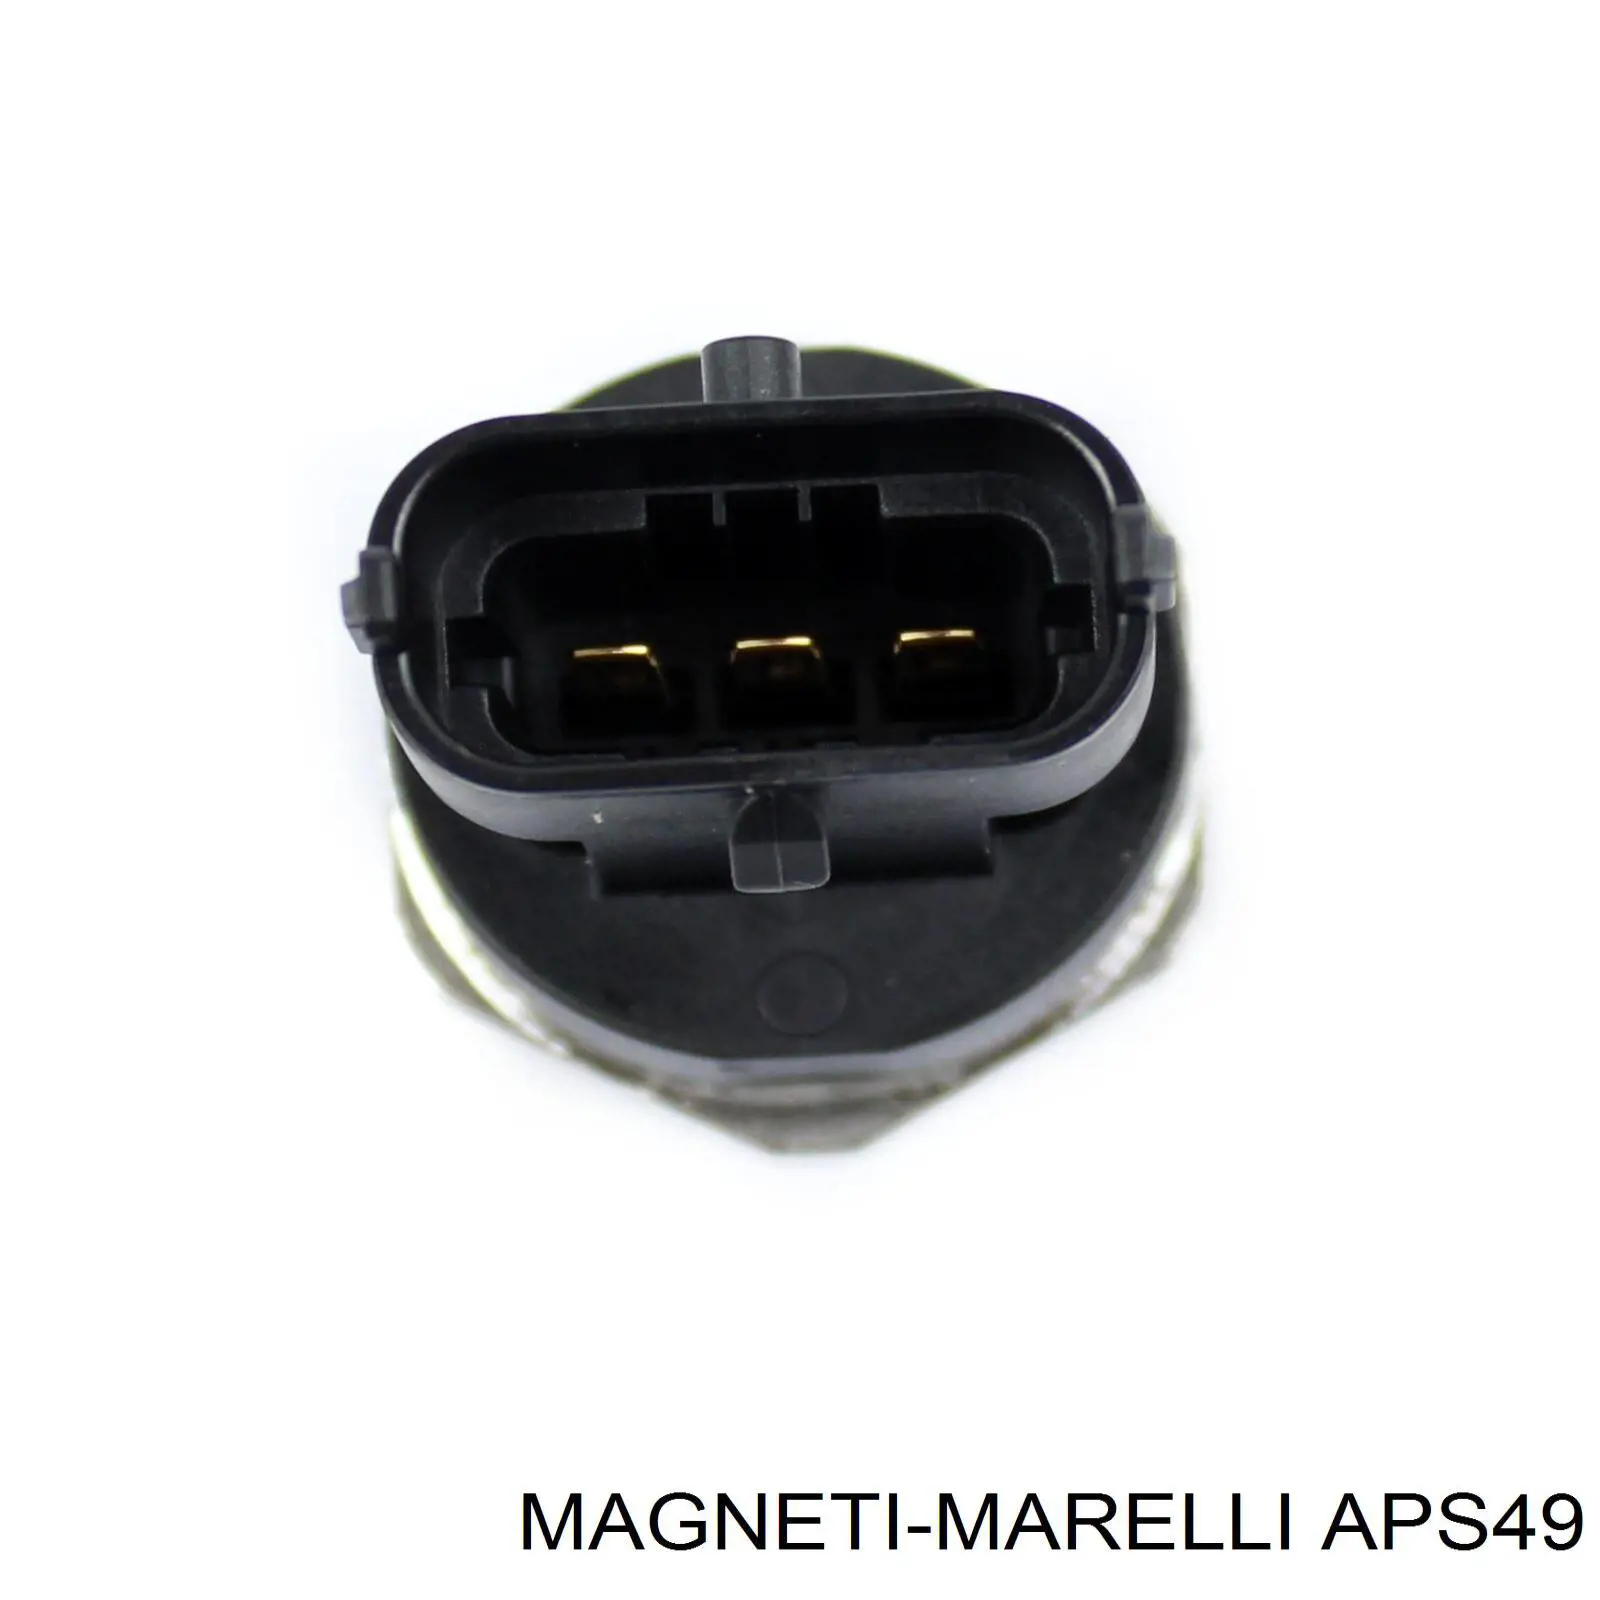 APS49 Magneti Marelli sensor de presión de combustible